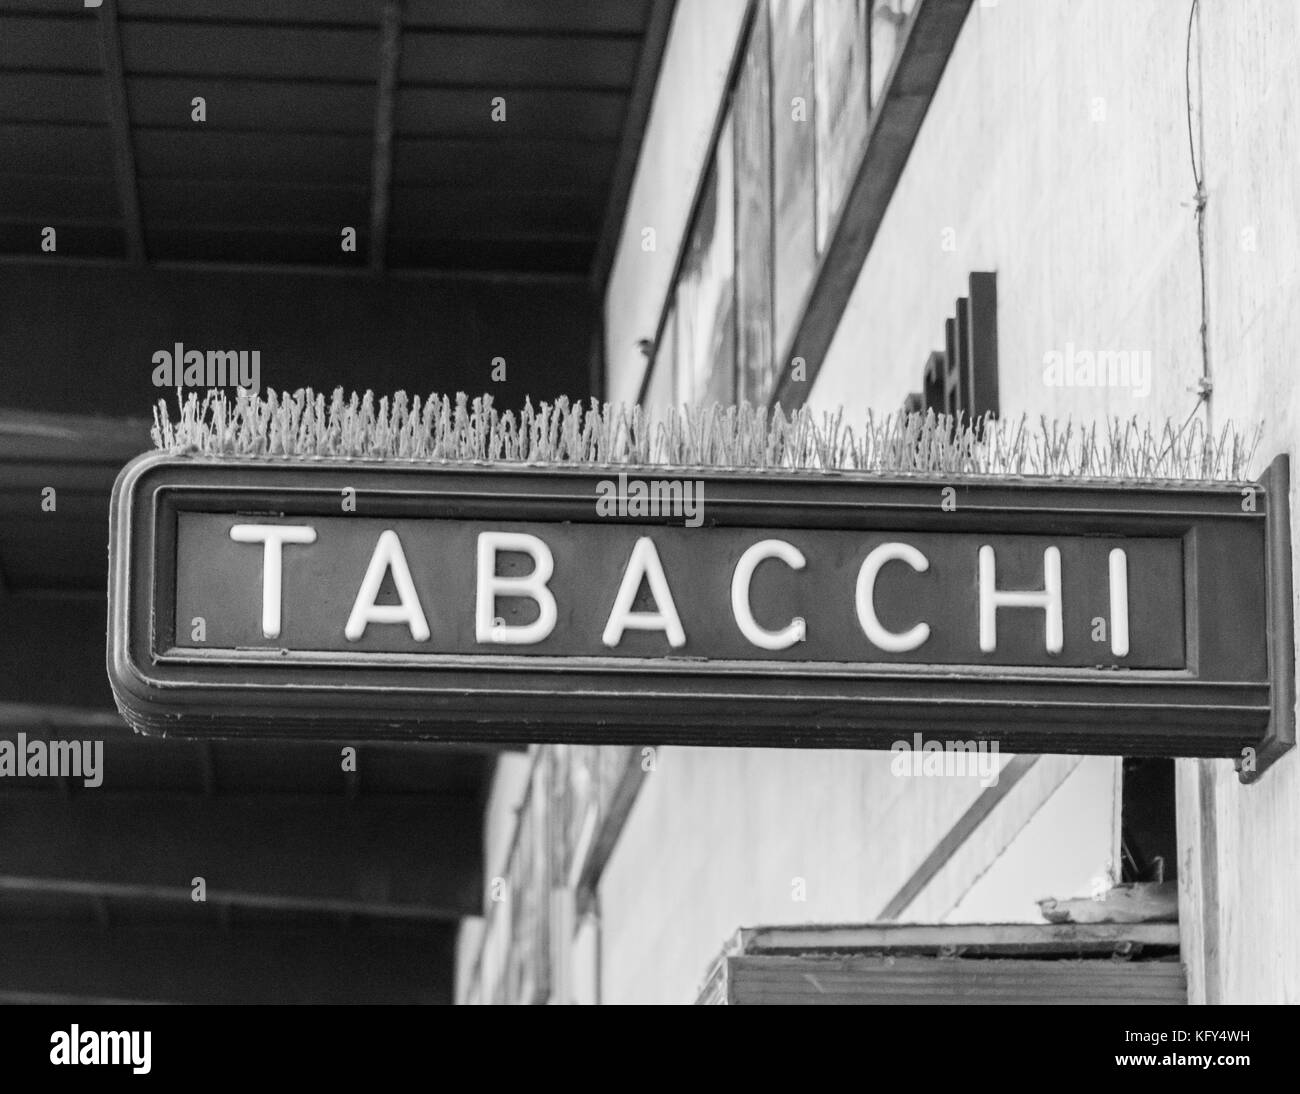 Ein Schild mit der Aufschrift "Tabacchi", das heißt, Tabak Verkaufsargument in Italienisch Stockfoto